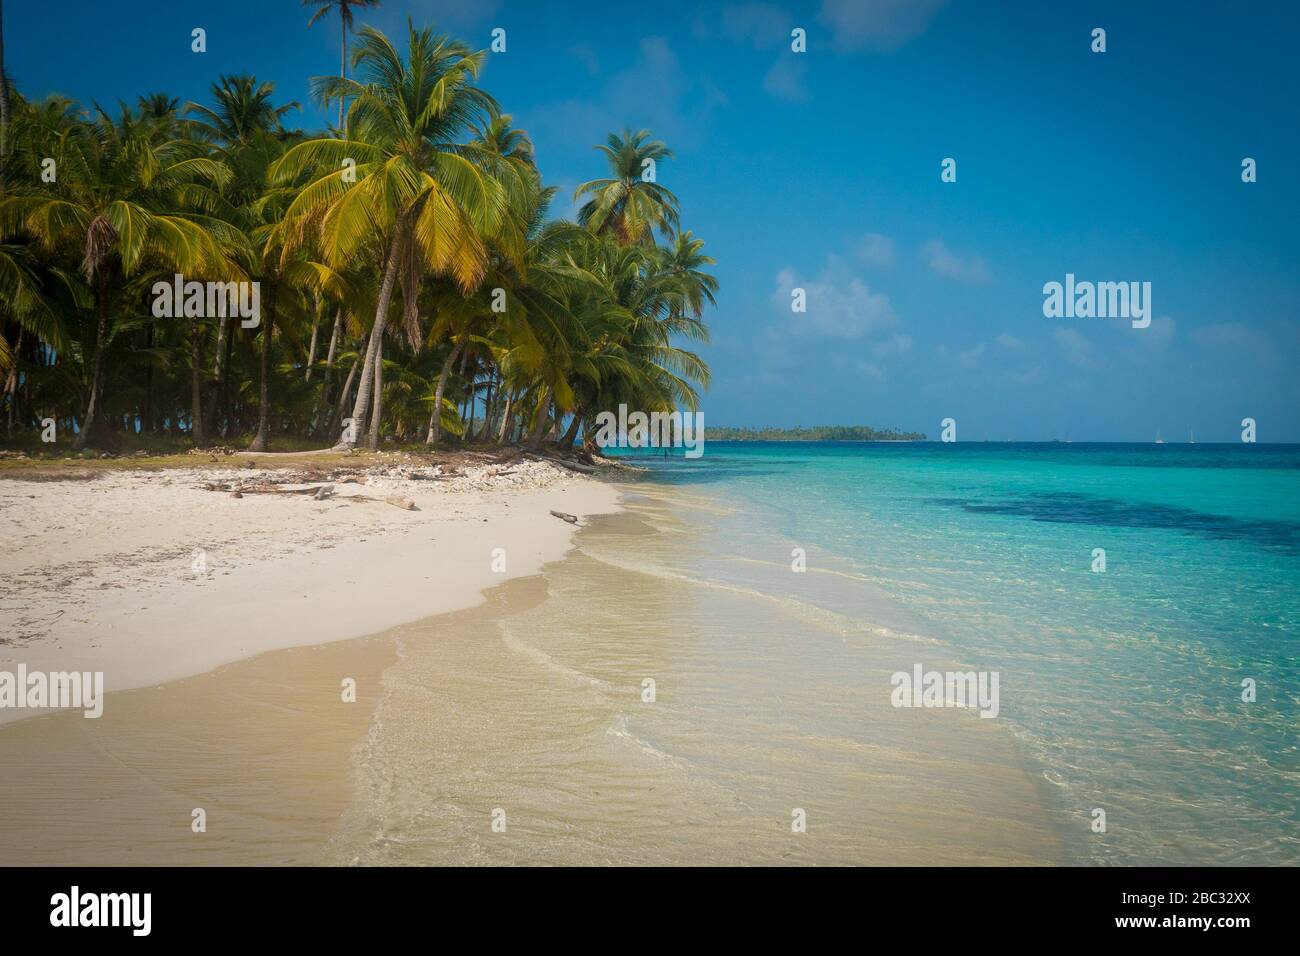 Una spiaggia di sabbia bianca vuota con palme e acqua cristallina acquamarina. Foto Stock